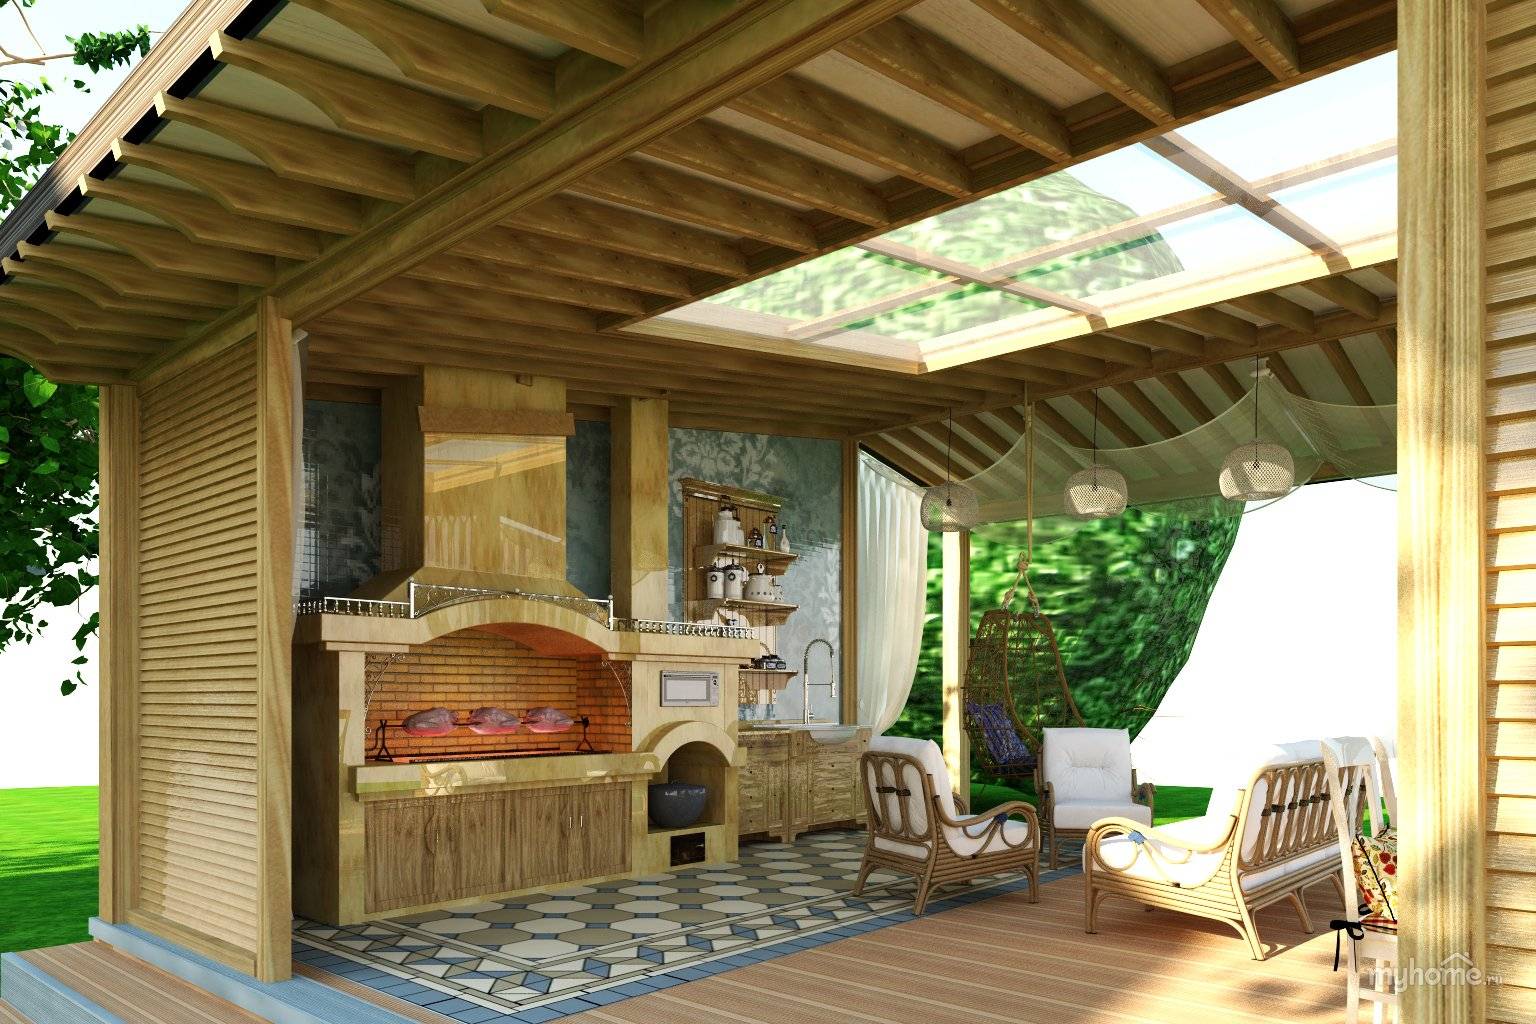 Беседка в ландшафтном дизайне на дачном участке: фото садового декора и интерьера внутри, как облагородить своими руками на даче